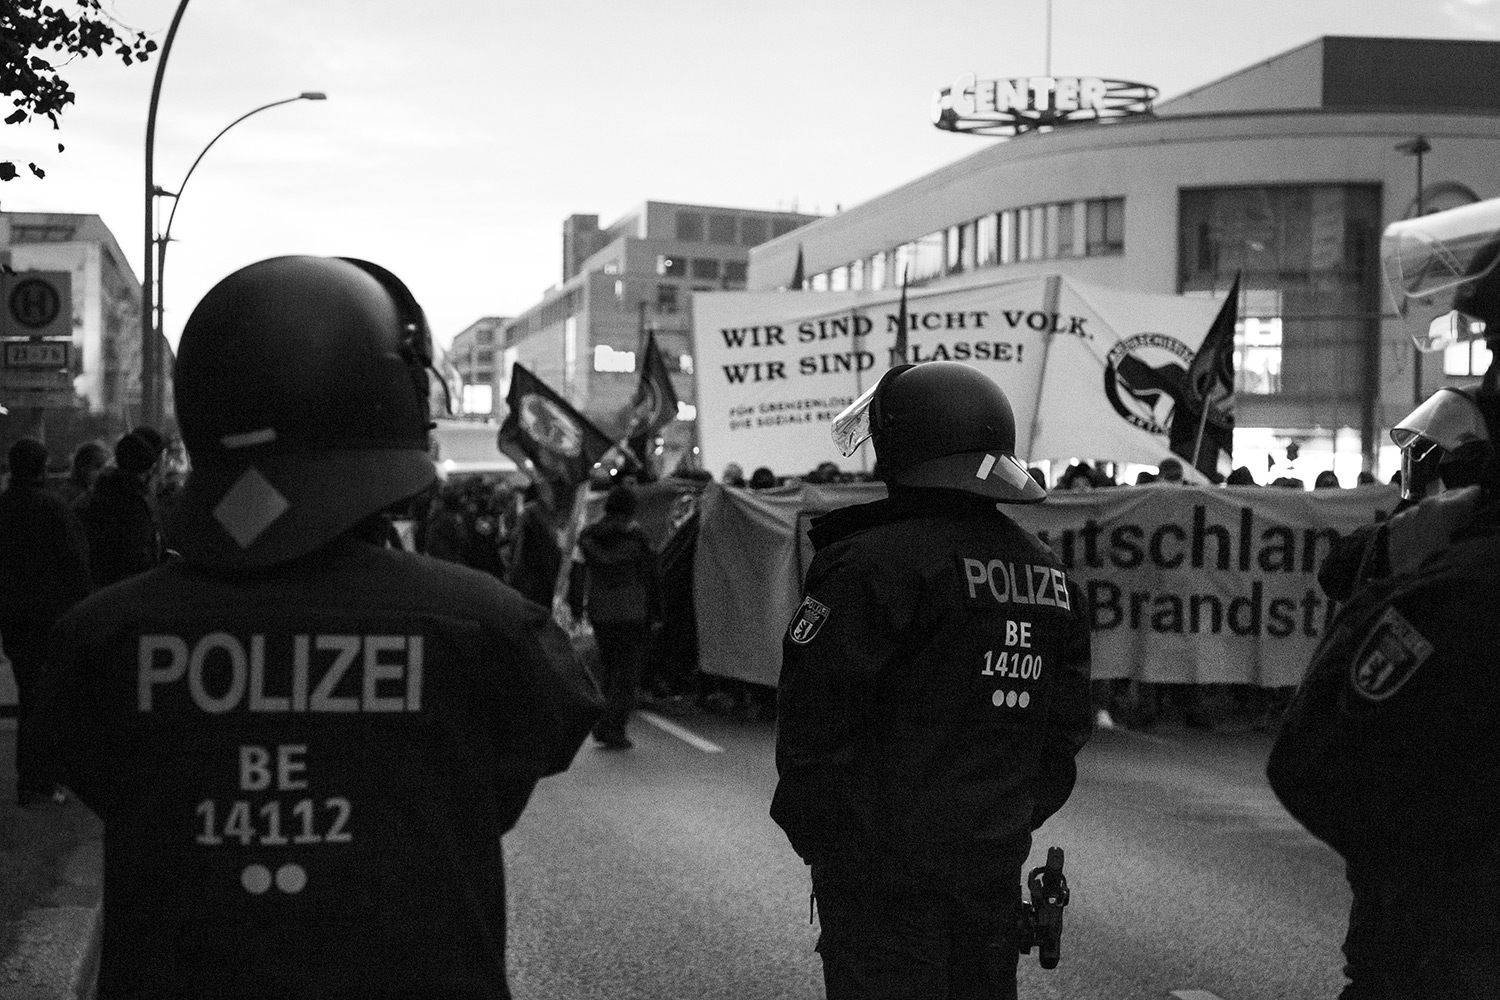 Polizei Stuttgart: Schutz für Rechte, Prügel für Sanitäter:innen